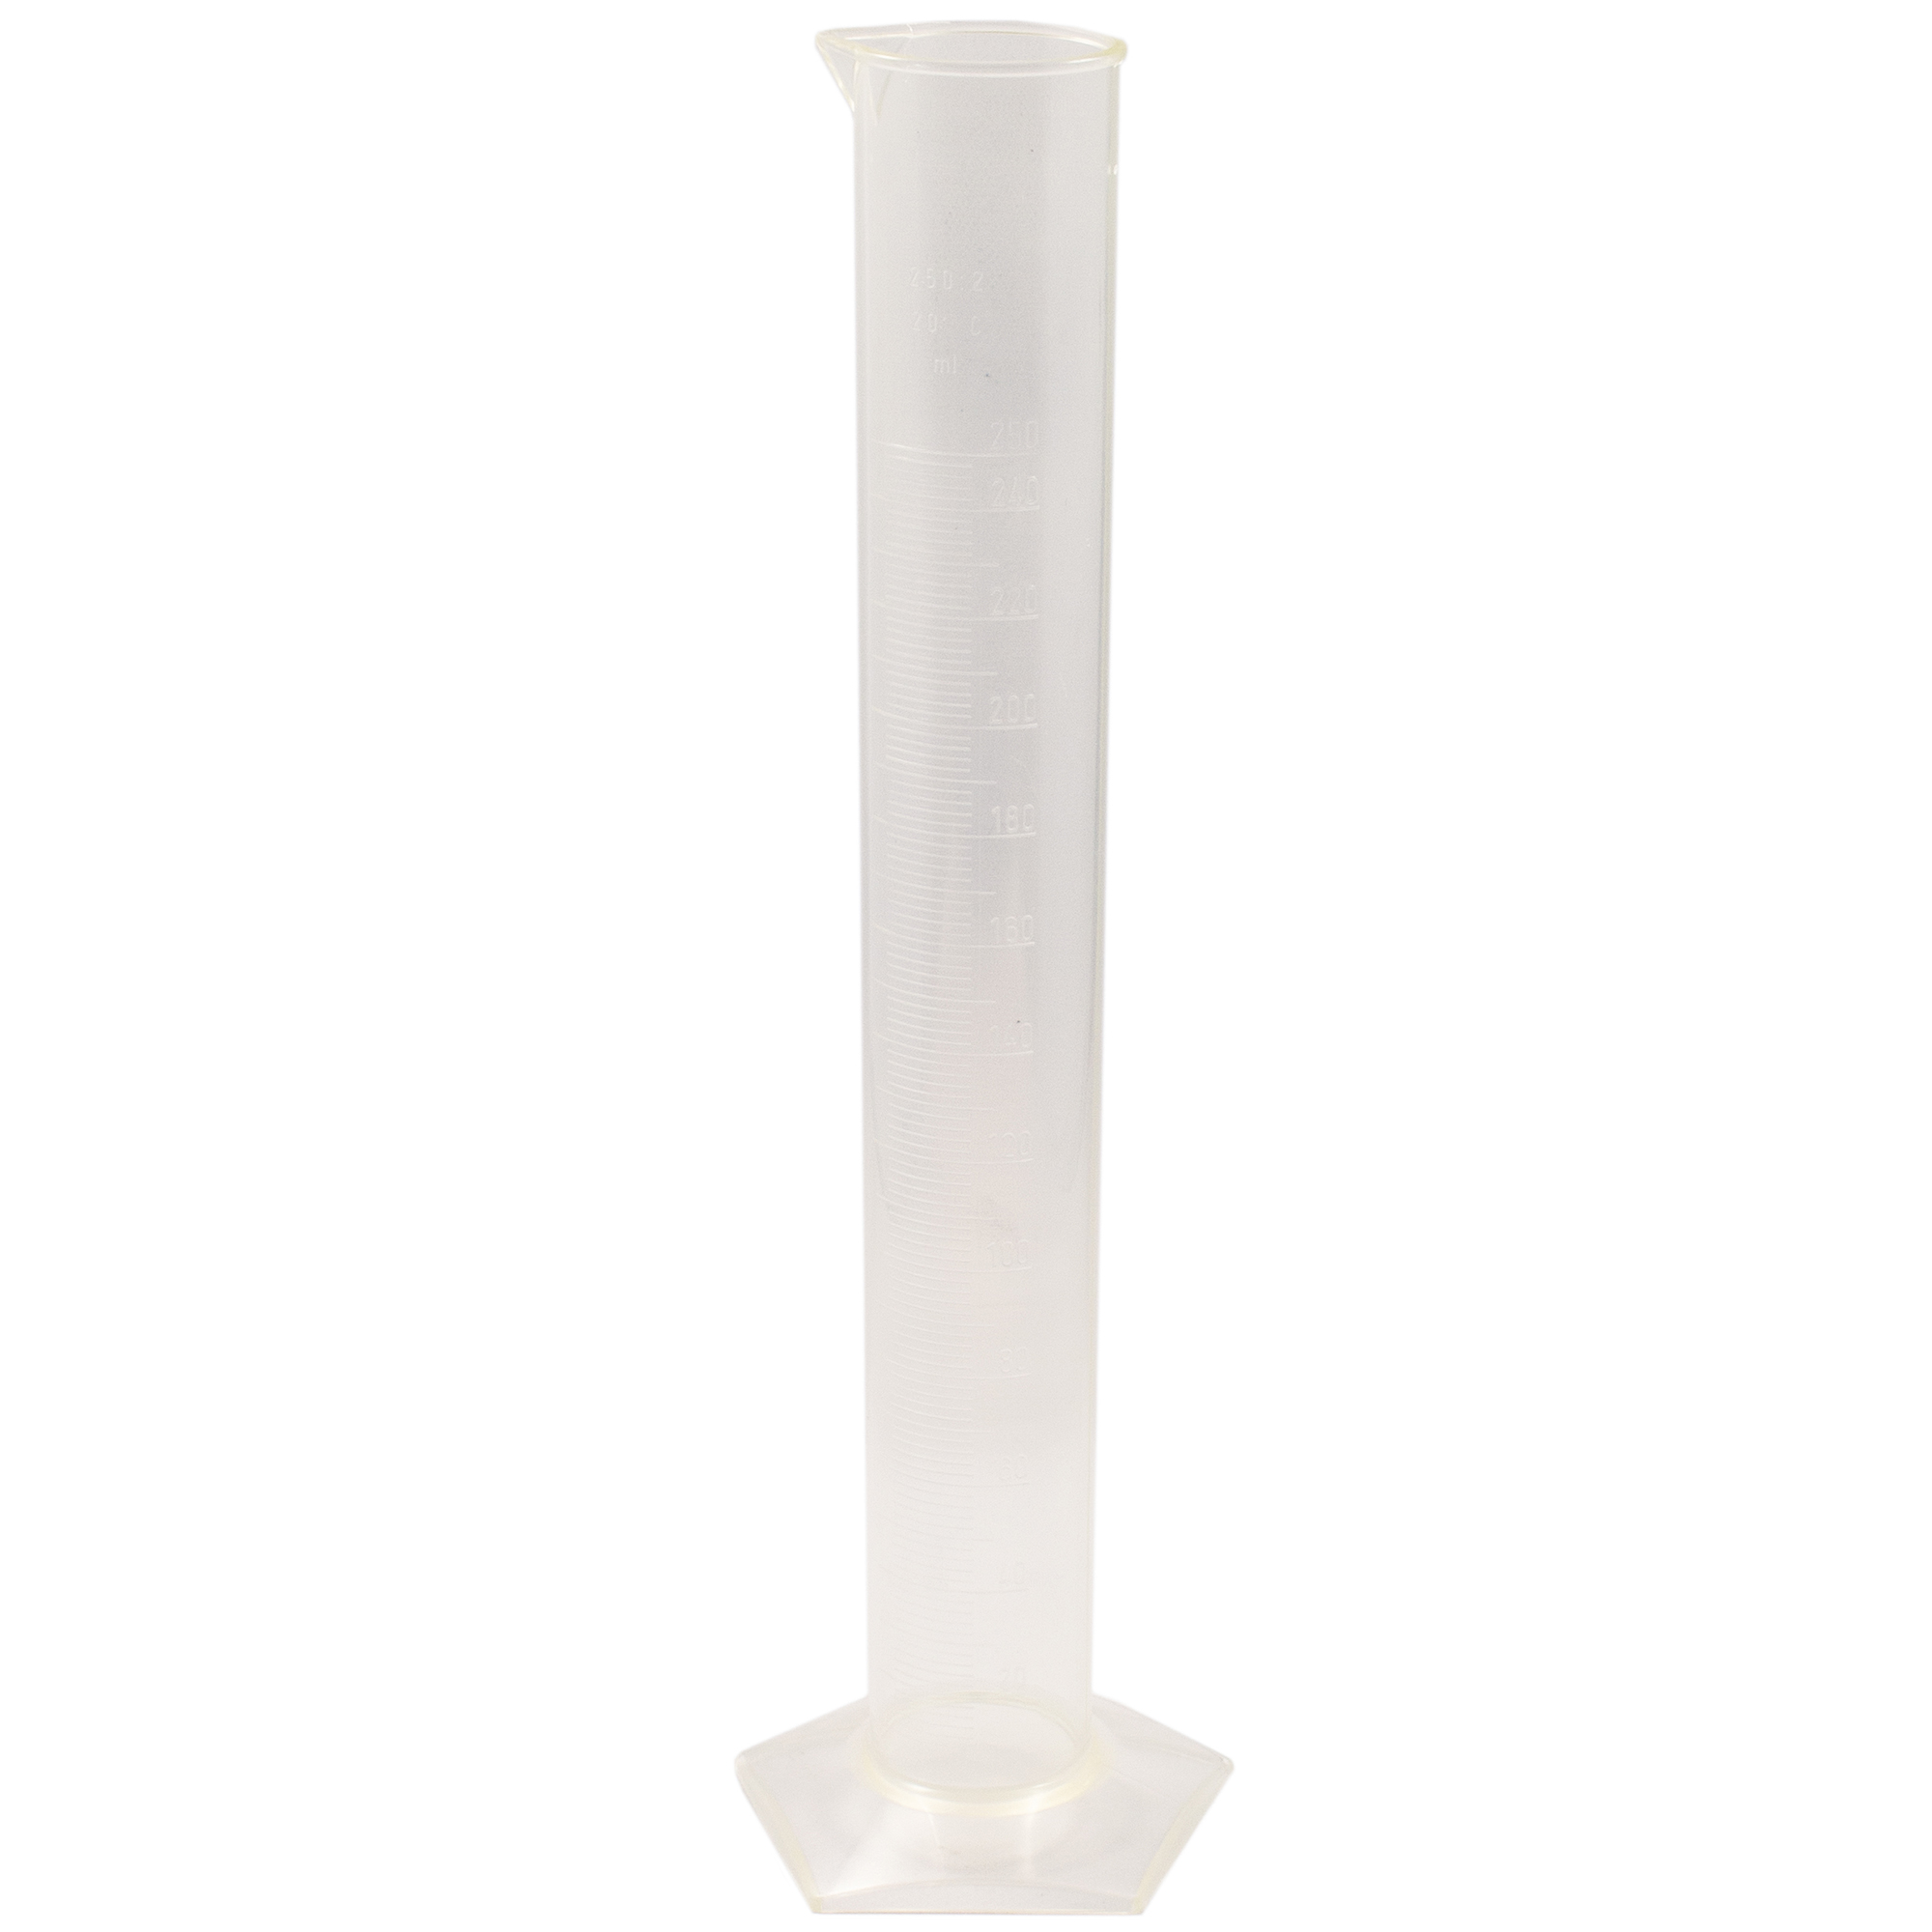 Measuring cylinder plastic (tpx) - 2 Ltr